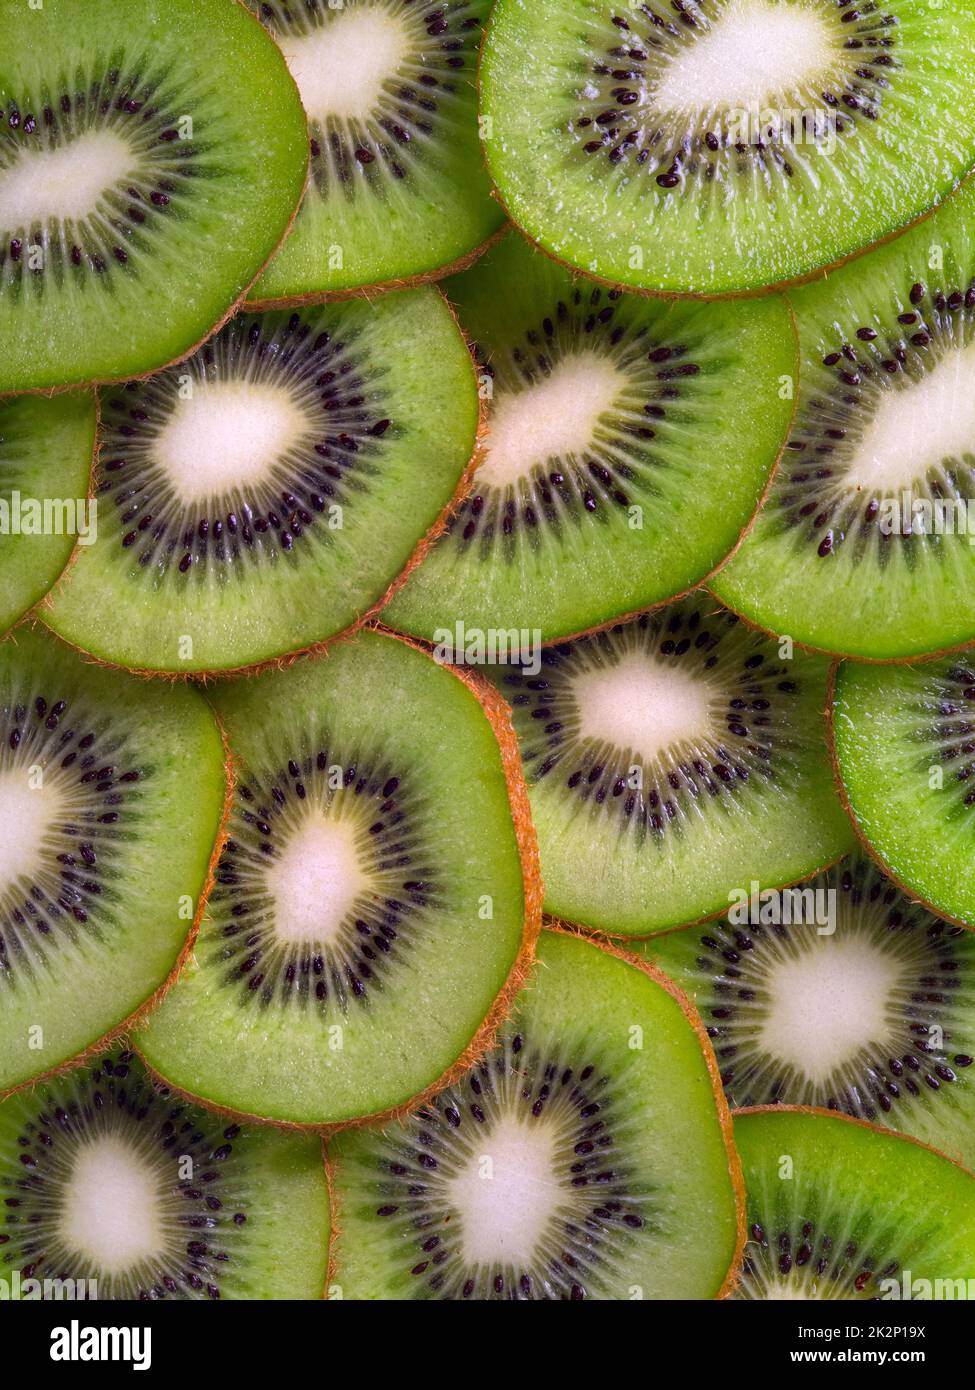 Sliced Kiwi fruit background Stock Photo